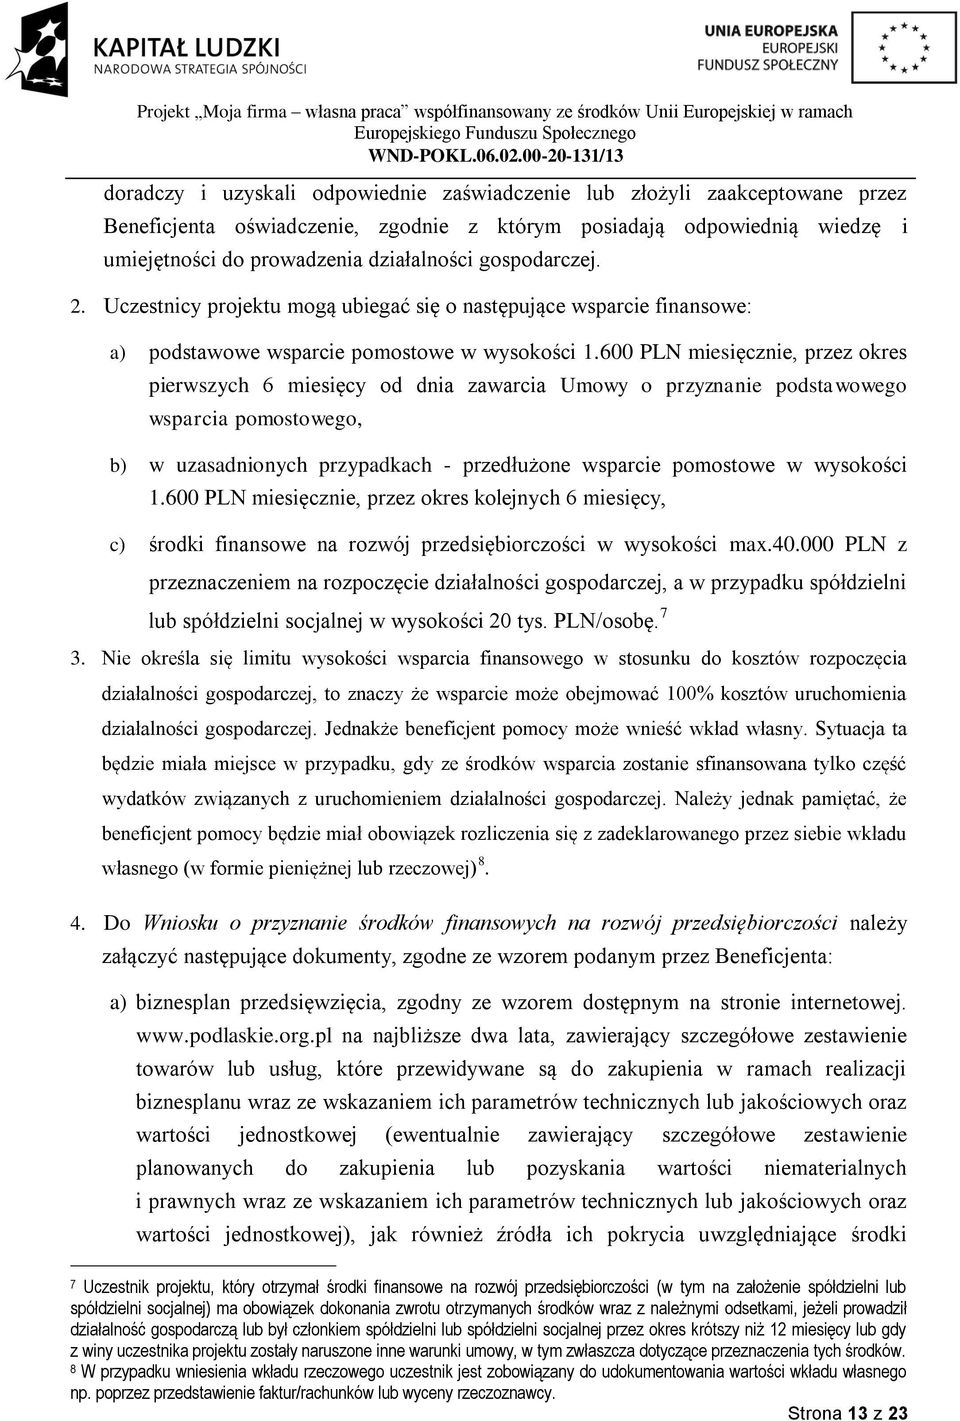 600 PLN miesięcznie, przez okres pierwszych 6 miesięcy od dnia zawarcia Umowy o przyznanie podstawowego wsparcia pomostowego, b) w uzasadnionych przypadkach - przedłużone wsparcie pomostowe w